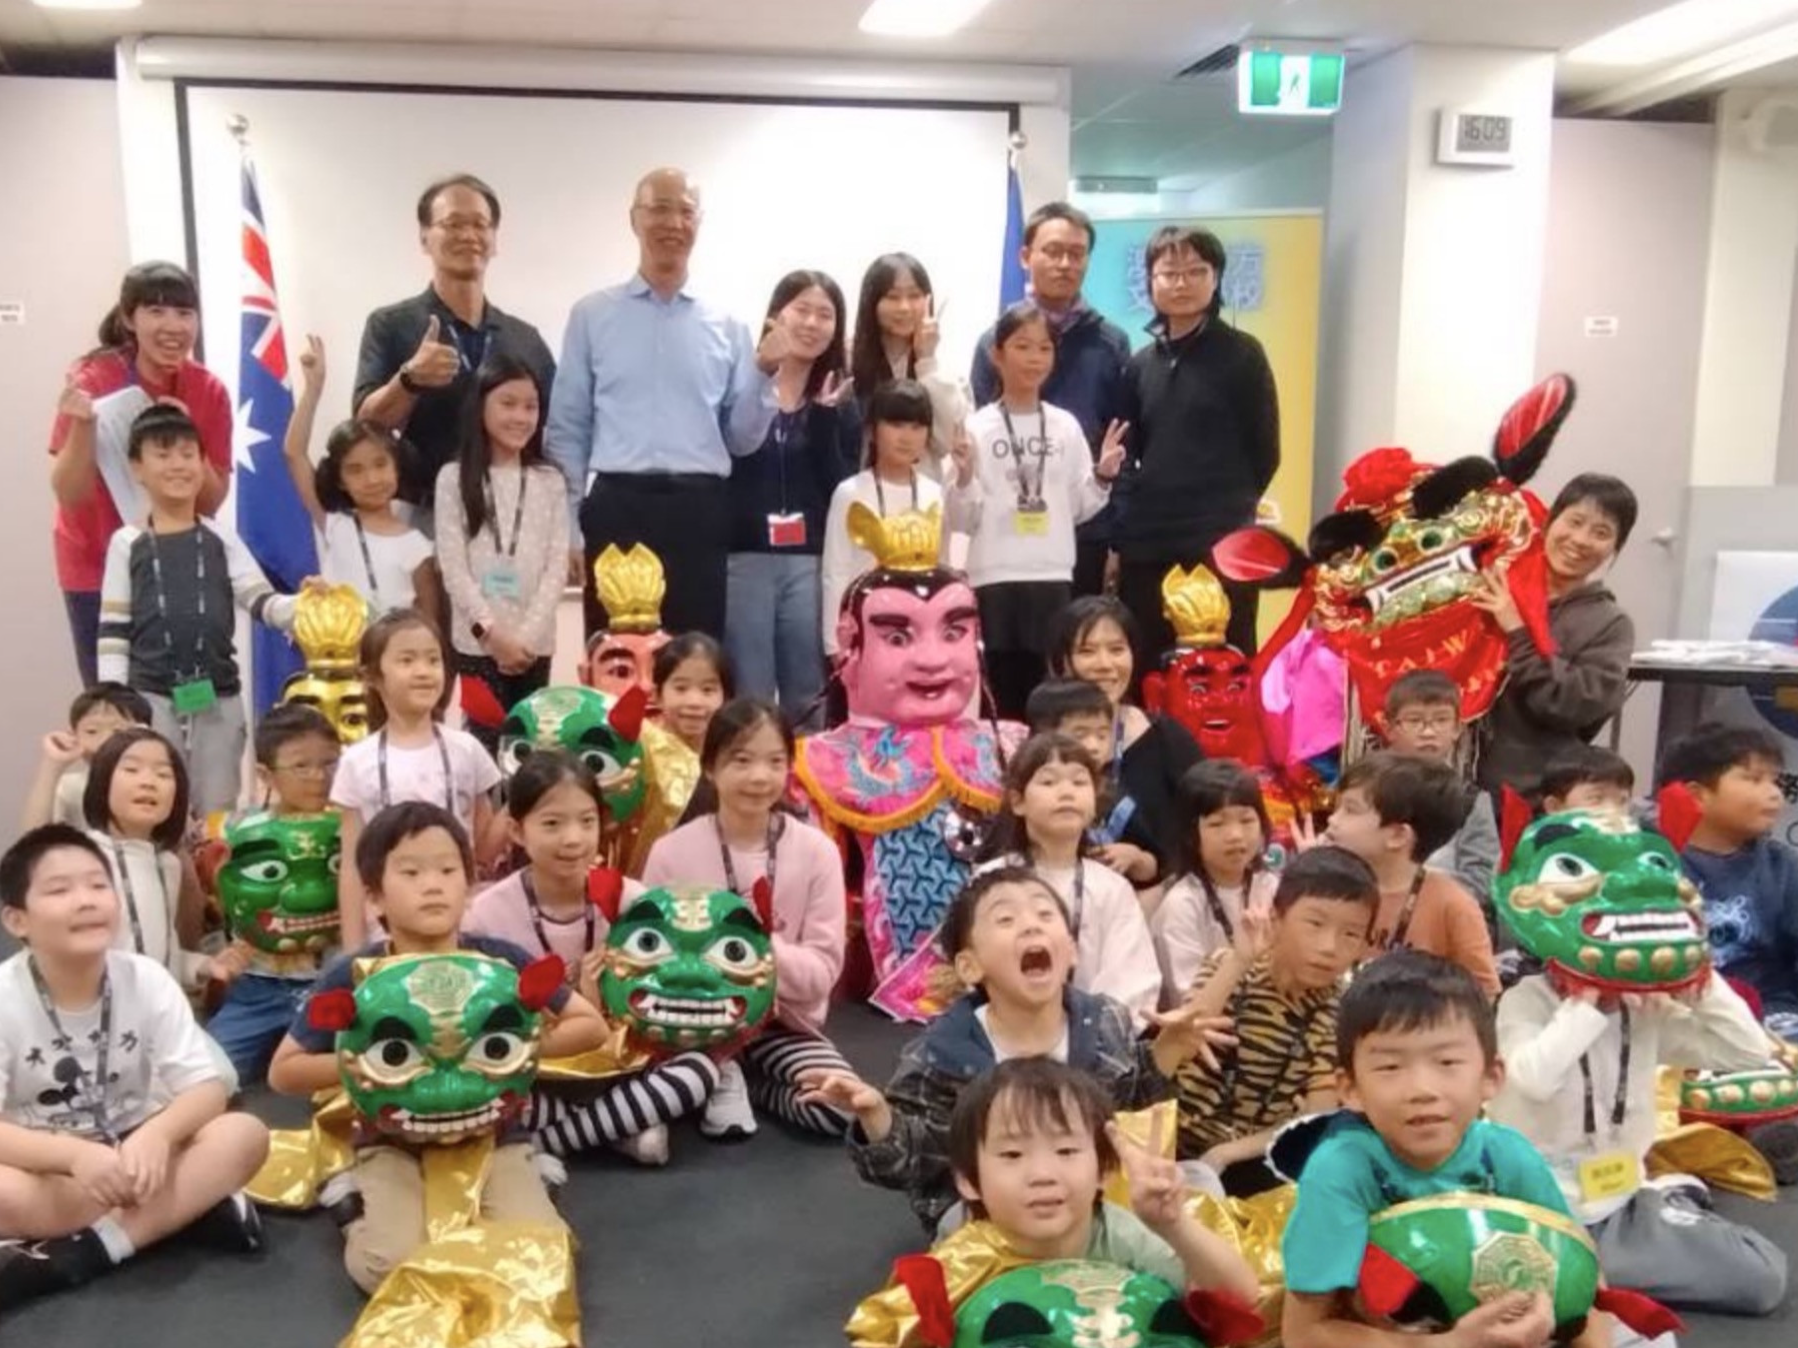 澳洲東方文化學校成功舉辦臺灣文化營隊 參與學生歡欣雀躍 家長肯定讚賞圖片